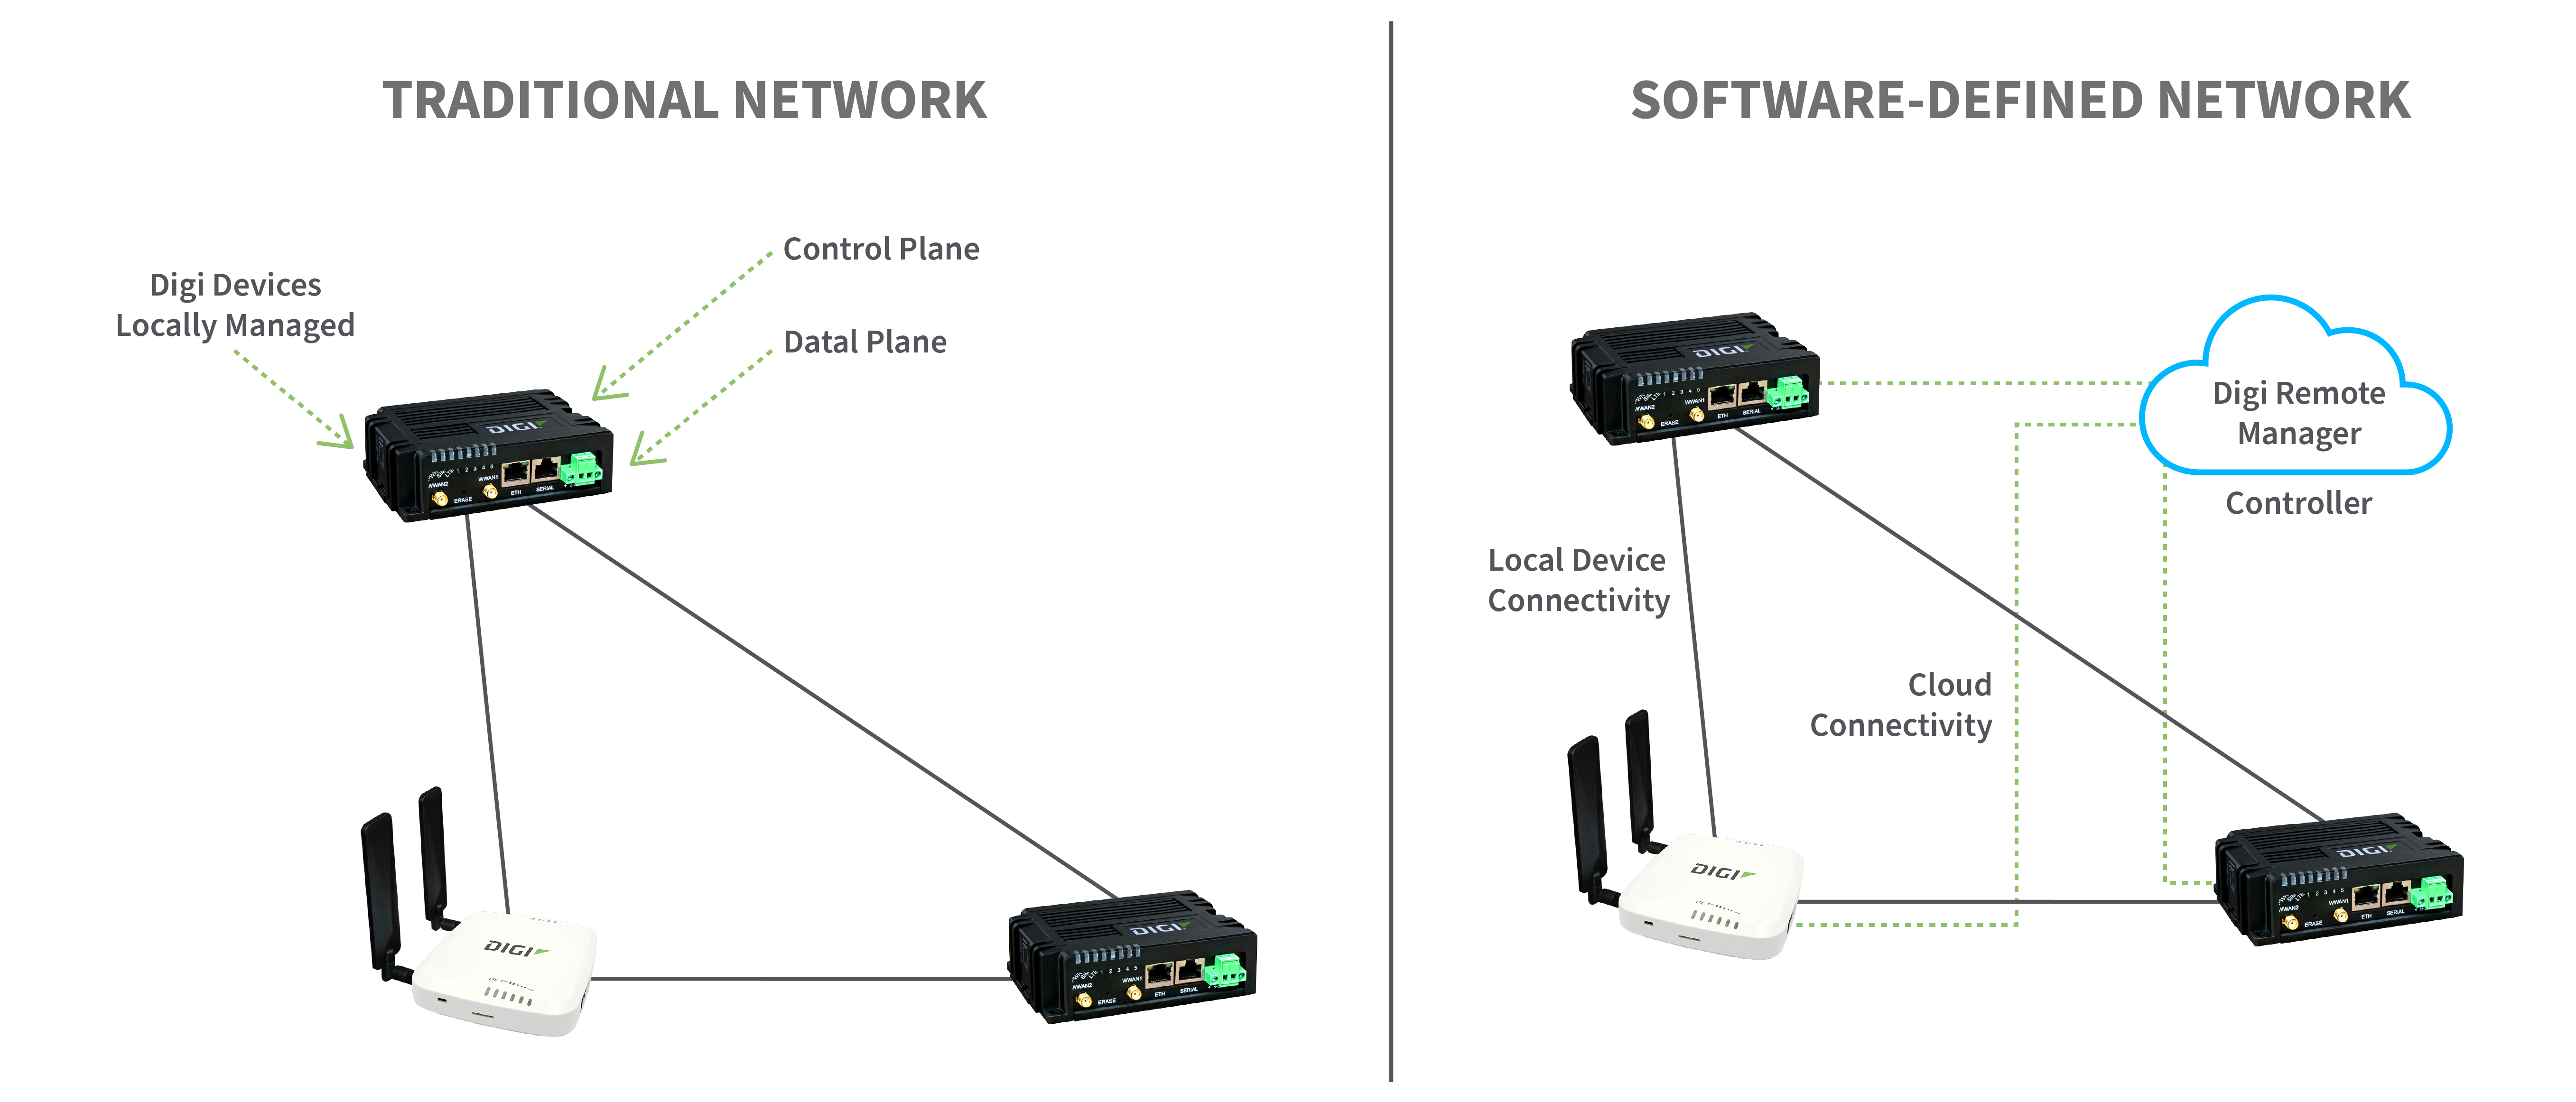 Redes tradicionales frente a redes definidas por software